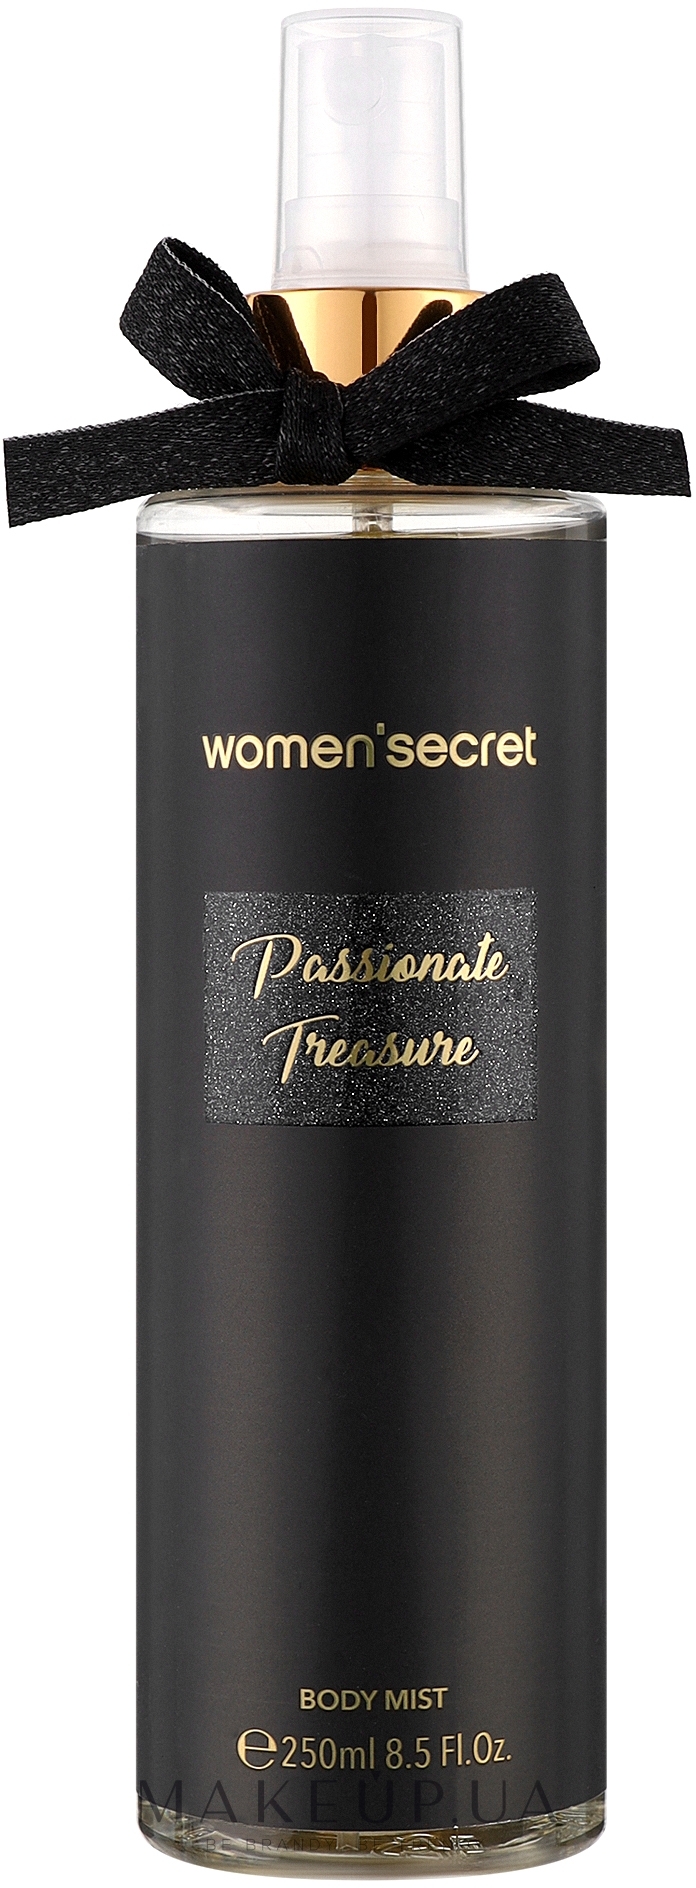 Women'Secret Passionate Treasure - Мист для тела — фото 250ml